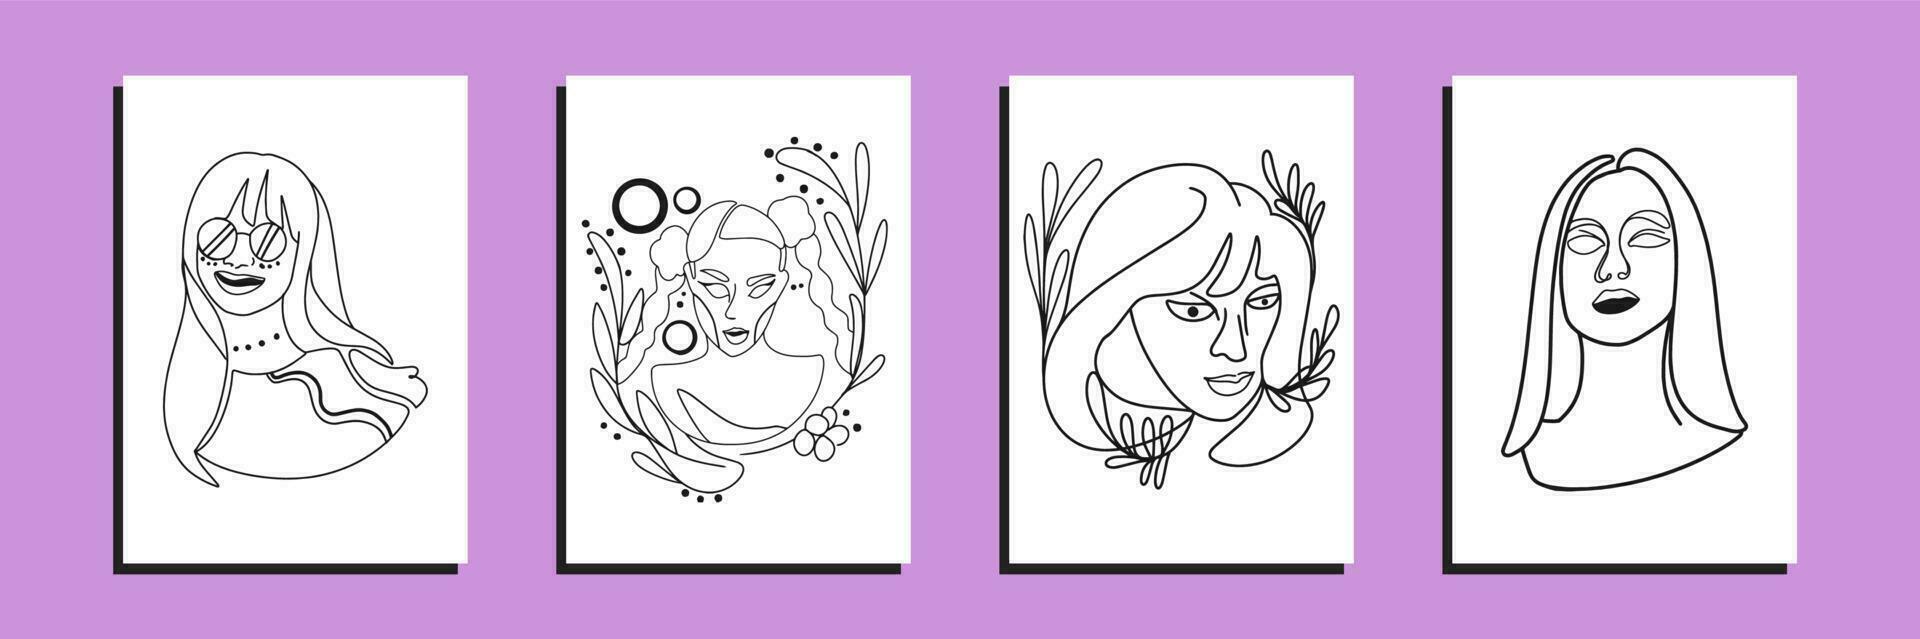 verbijsterend meisje ontwerpen bundel met retro hand getekend vector illustraties. minimalistisch abstract gezichten, handen, en vormen in hedendaags silhouet stijl.